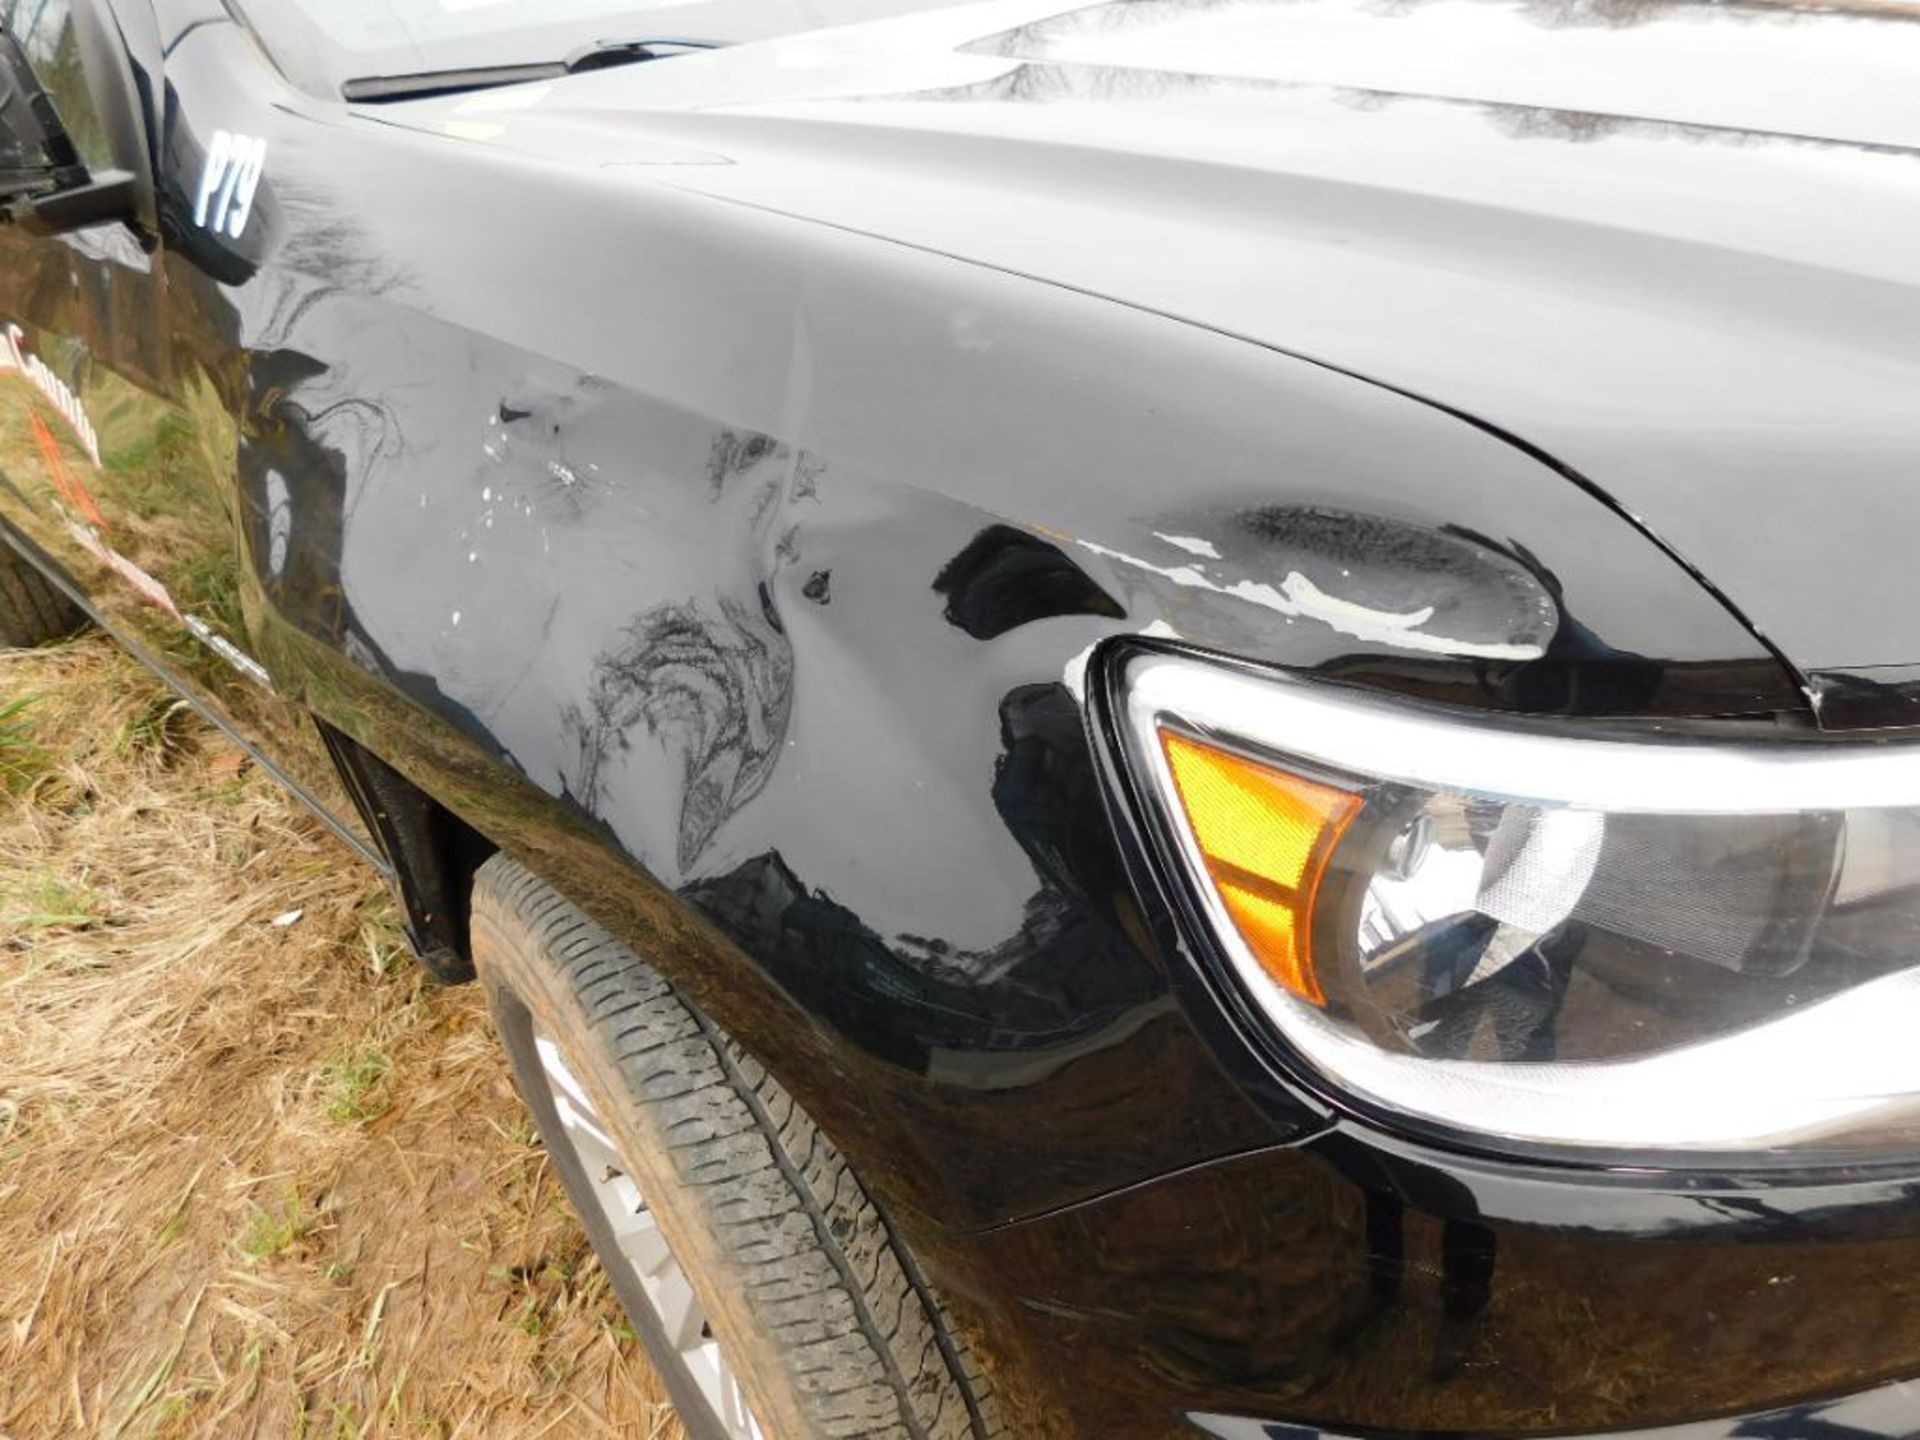 2019 Chevy Colorado Crew Cab, 4-Wheel Drive, VIN 1GCGTBEN7K1339597, 68,701 Miles Indicated, Auto Tir - Image 4 of 7